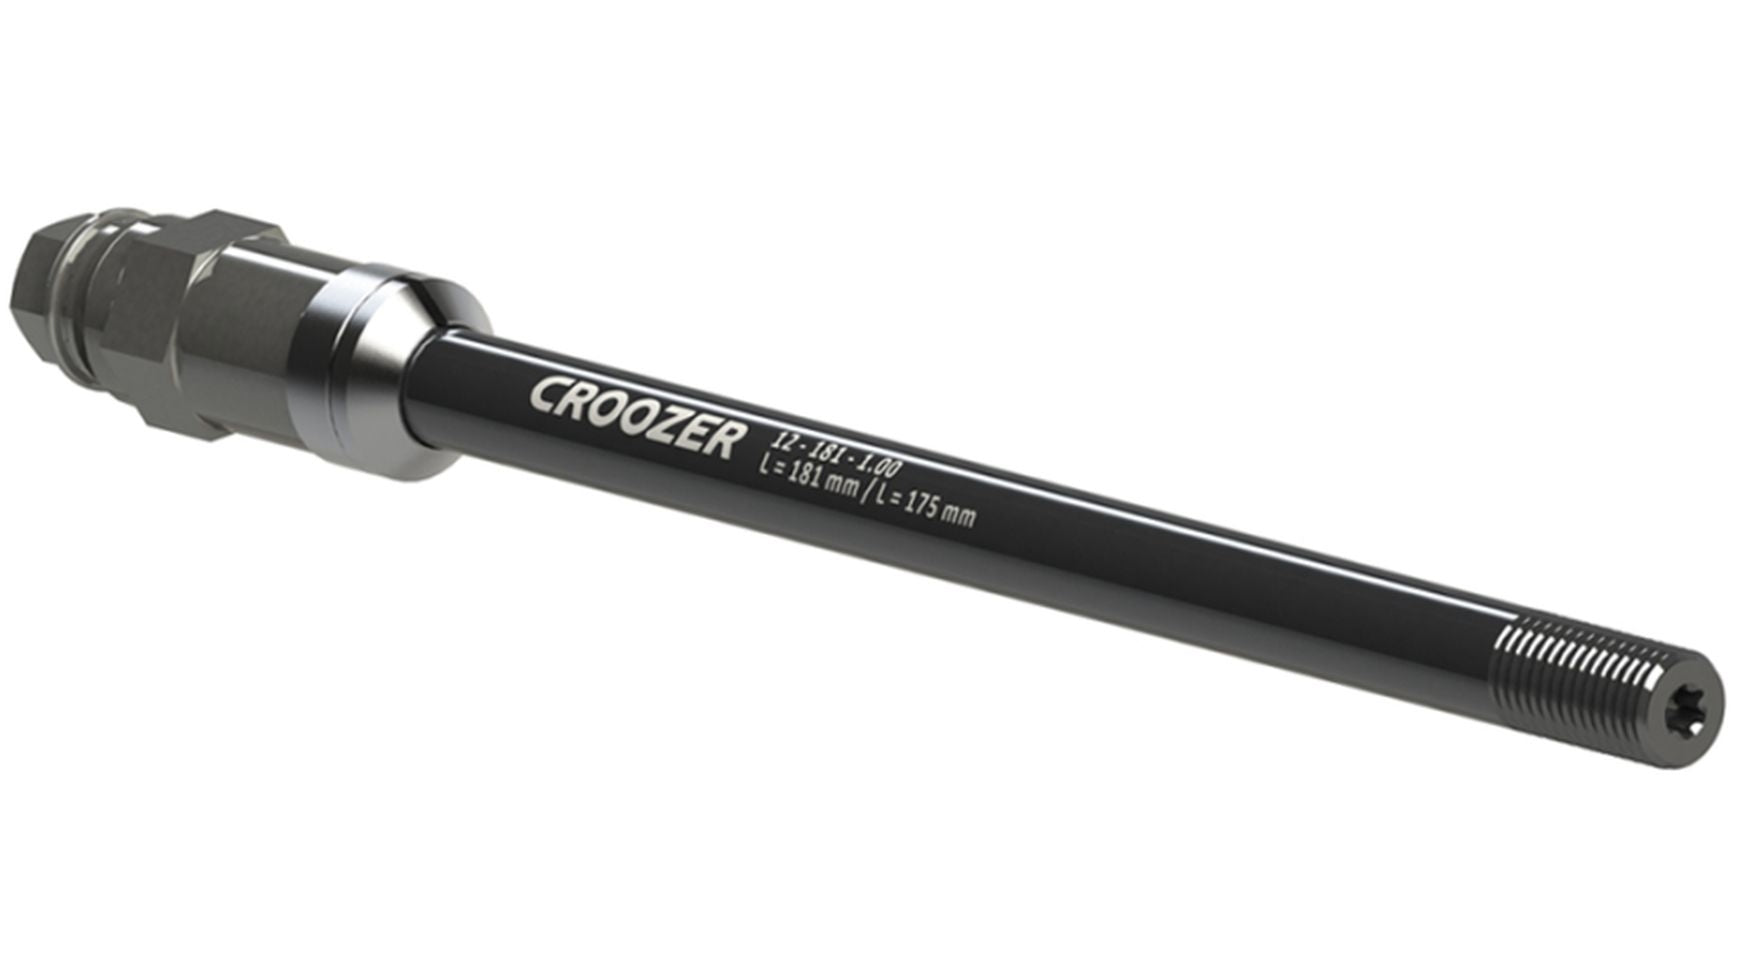 Croozer Steckachsadapter 12-181-1.0 von CROOZER